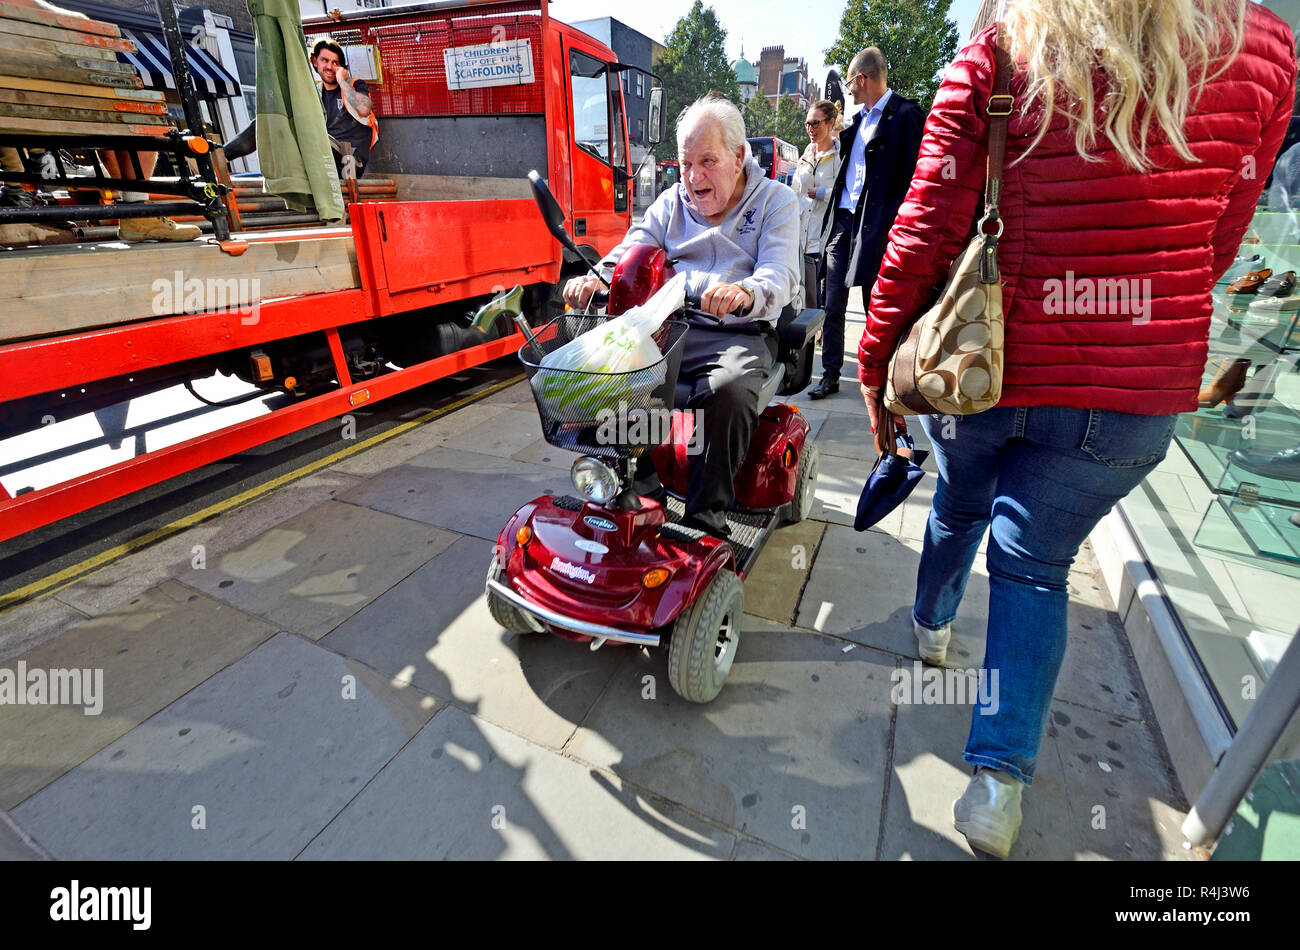 Uomo alla guida di una mobilità scooter sul marciapiede in centro a Londra, Inghilterra, Regno Unito. Foto Stock